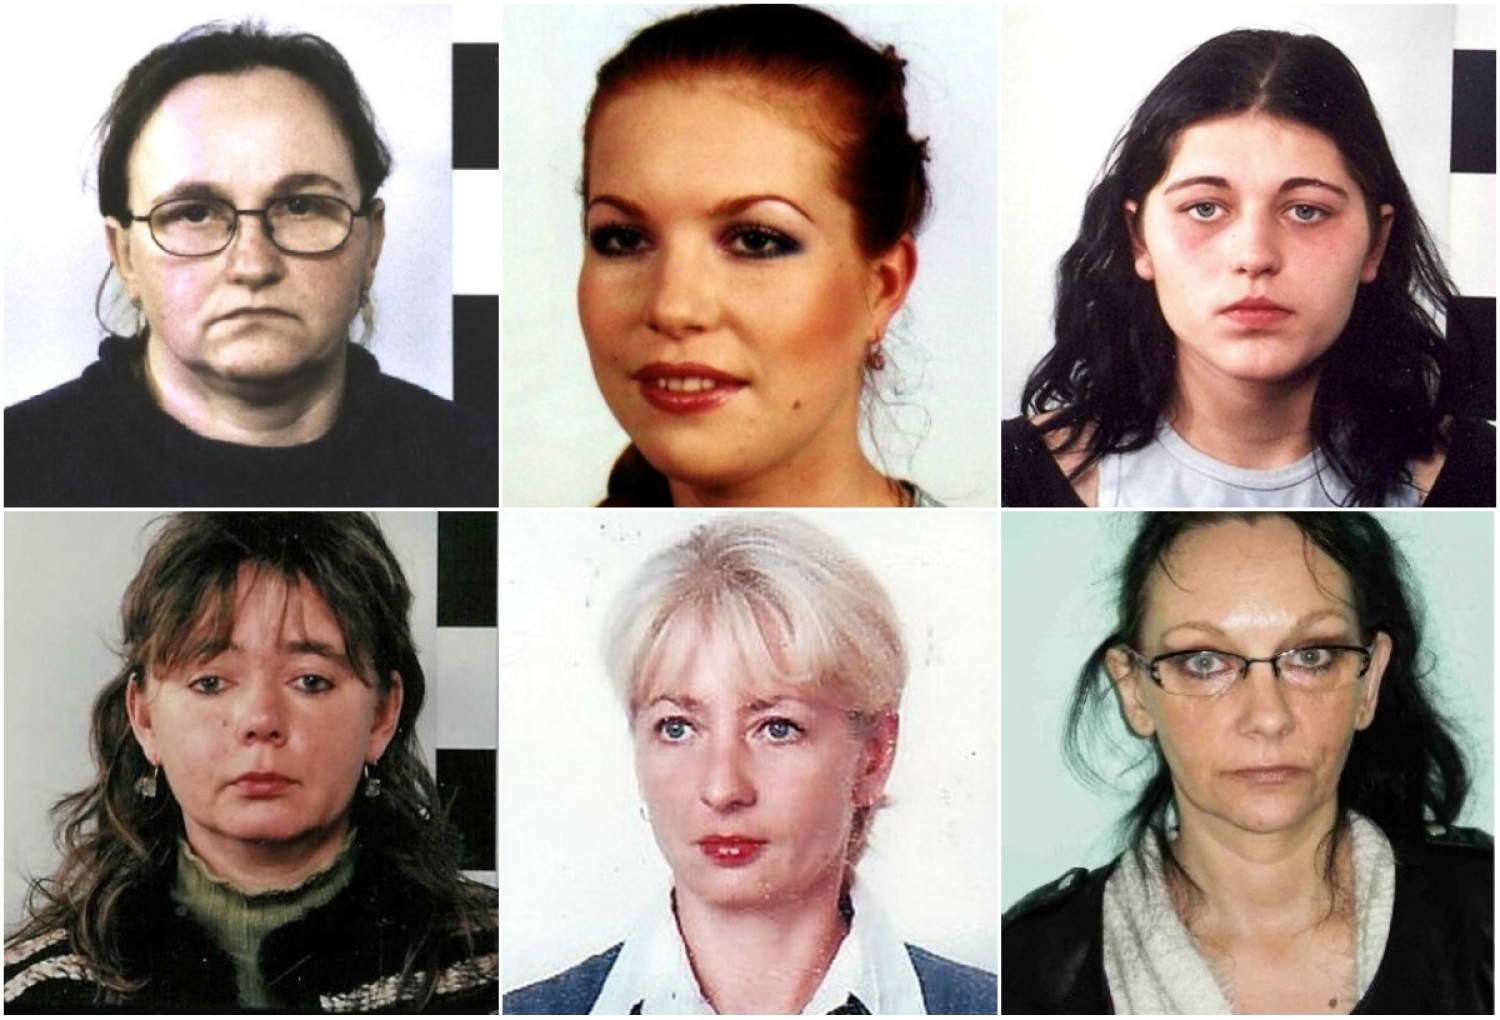 Rozpoznajesz którąś z tych kobiet? Widziałeś ją? Koniecznie skontaktuj się z policją! Numery telefonów i adresy mailowe znajdziesz w opisach zdjęć